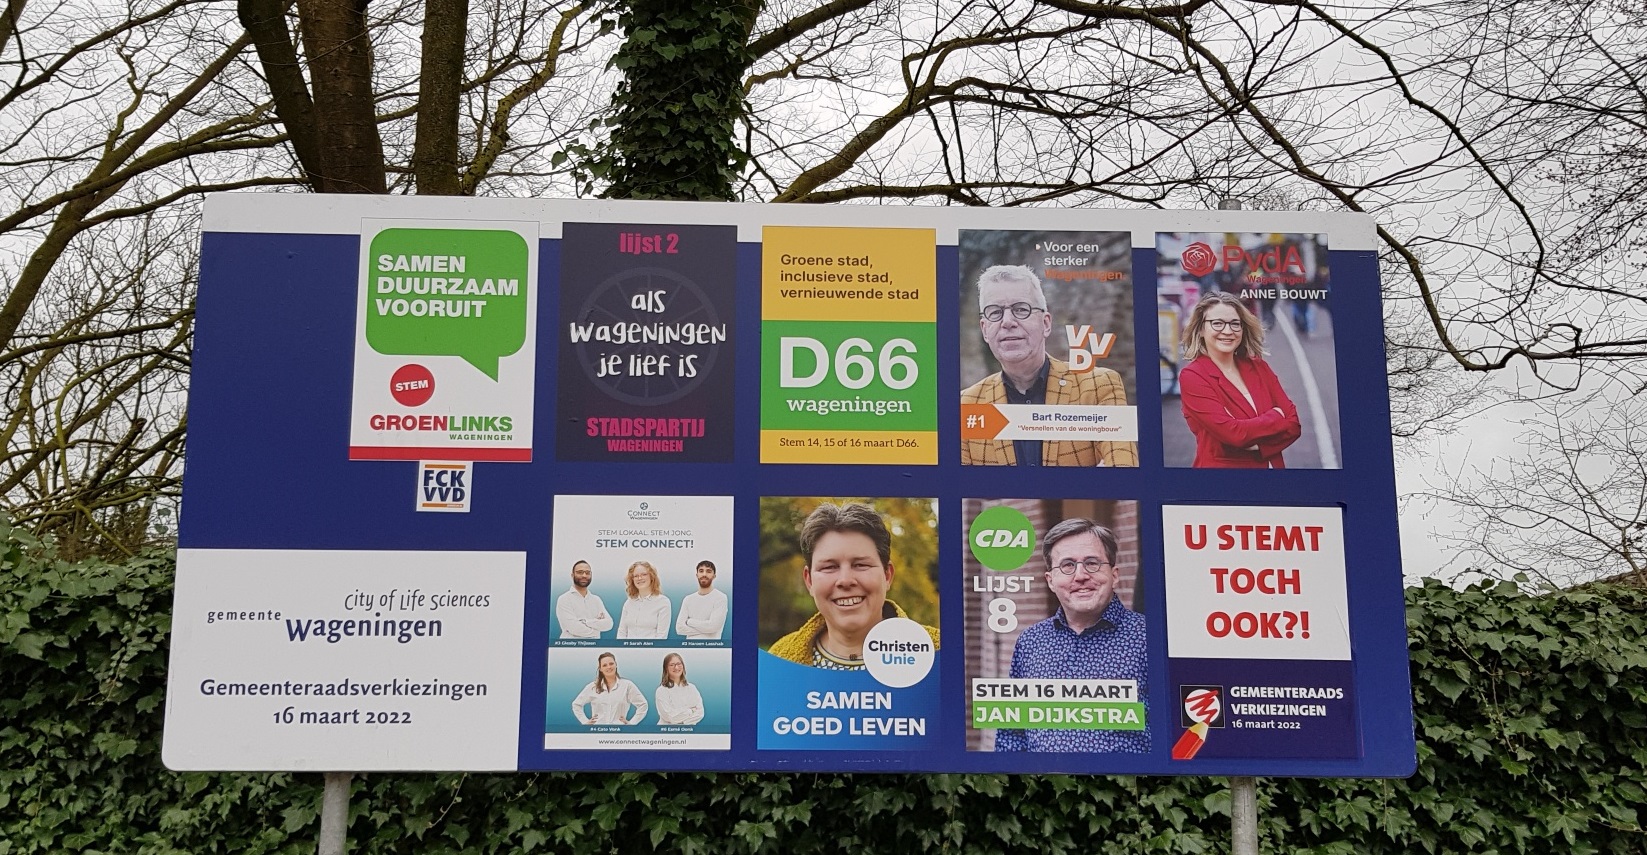 GroenLinks and PvdA win in Wageningen